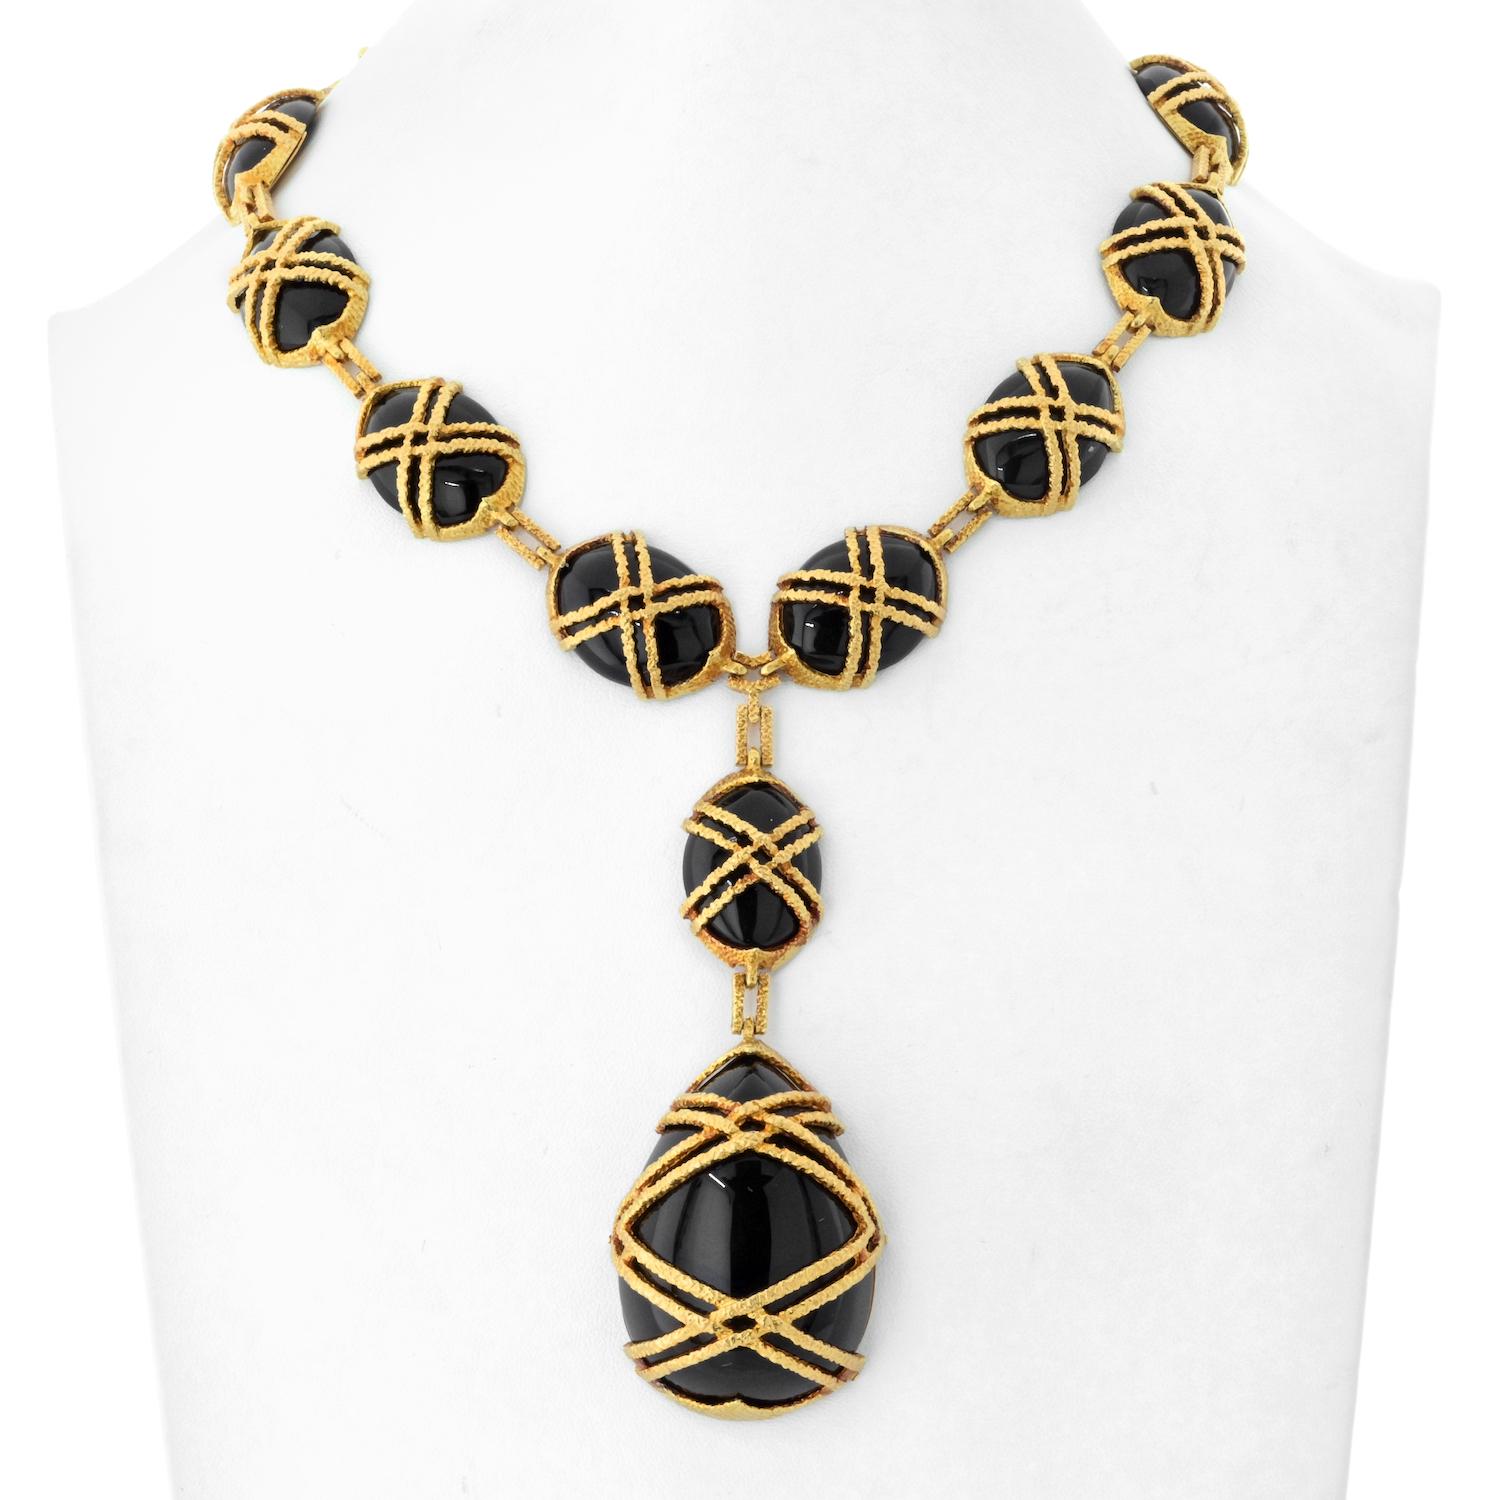 Sie ist der Inbegriff zeitloser Eleganz: die Cartier 18K Yellow Gold 1969 Black Jade Necklace. Dieses exquisite Stück wurde in Perfektion gefertigt und strahlt mit seinen sorgfältig gestalteten Merkmalen Raffinesse und Luxus aus.

Die Halskette ist